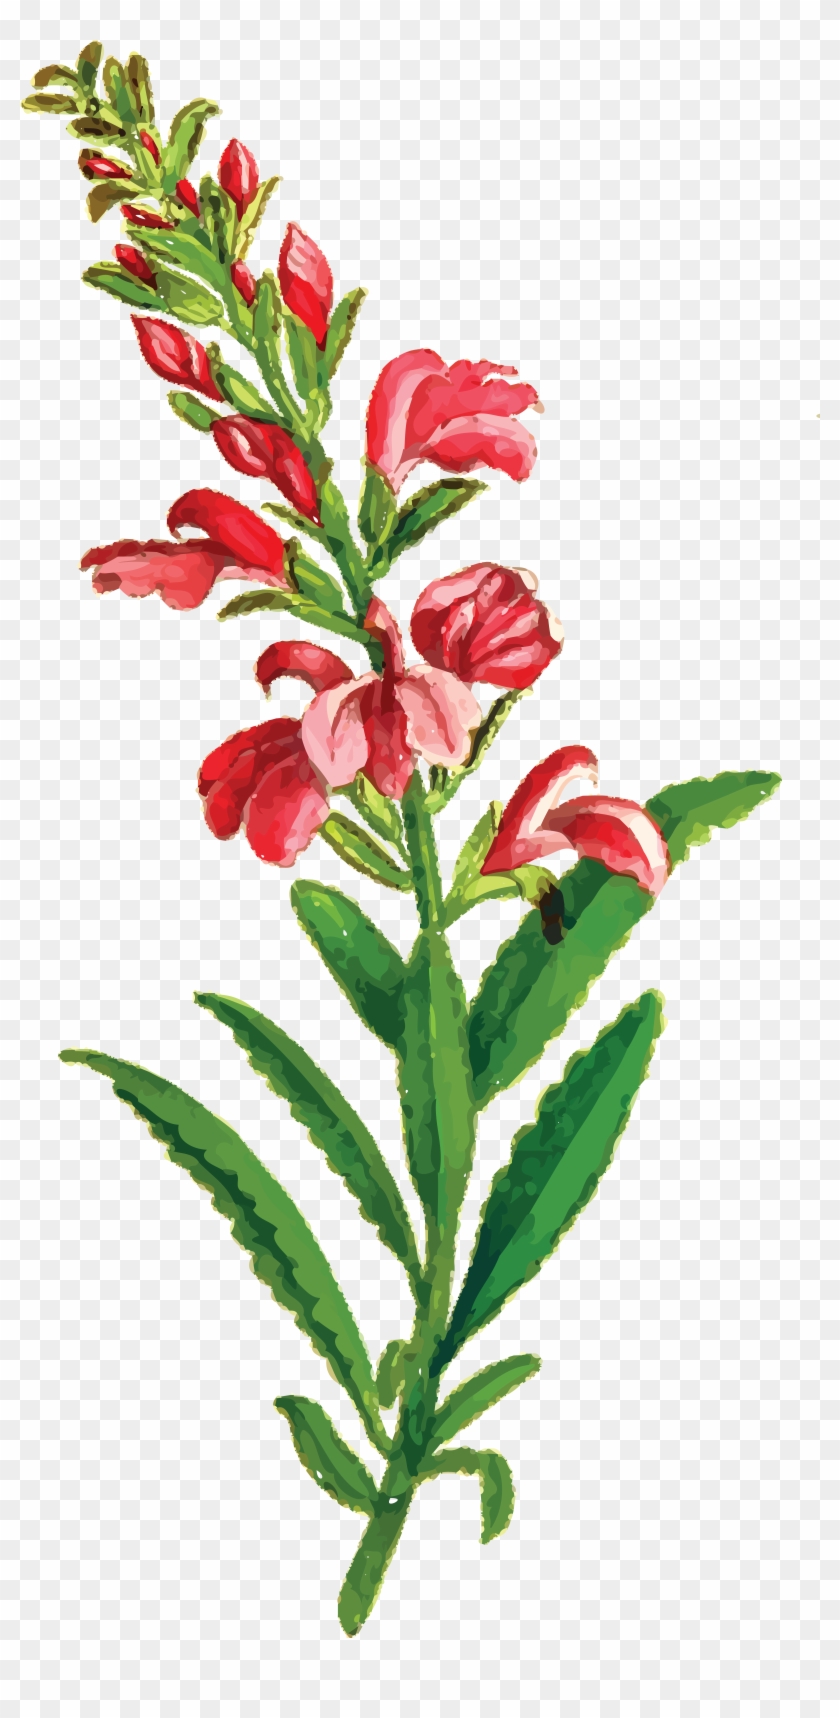 Free Clipart Of A Flowering Plant - Vintage Blumenhochzeit Uawg-karten Postkarte #185646